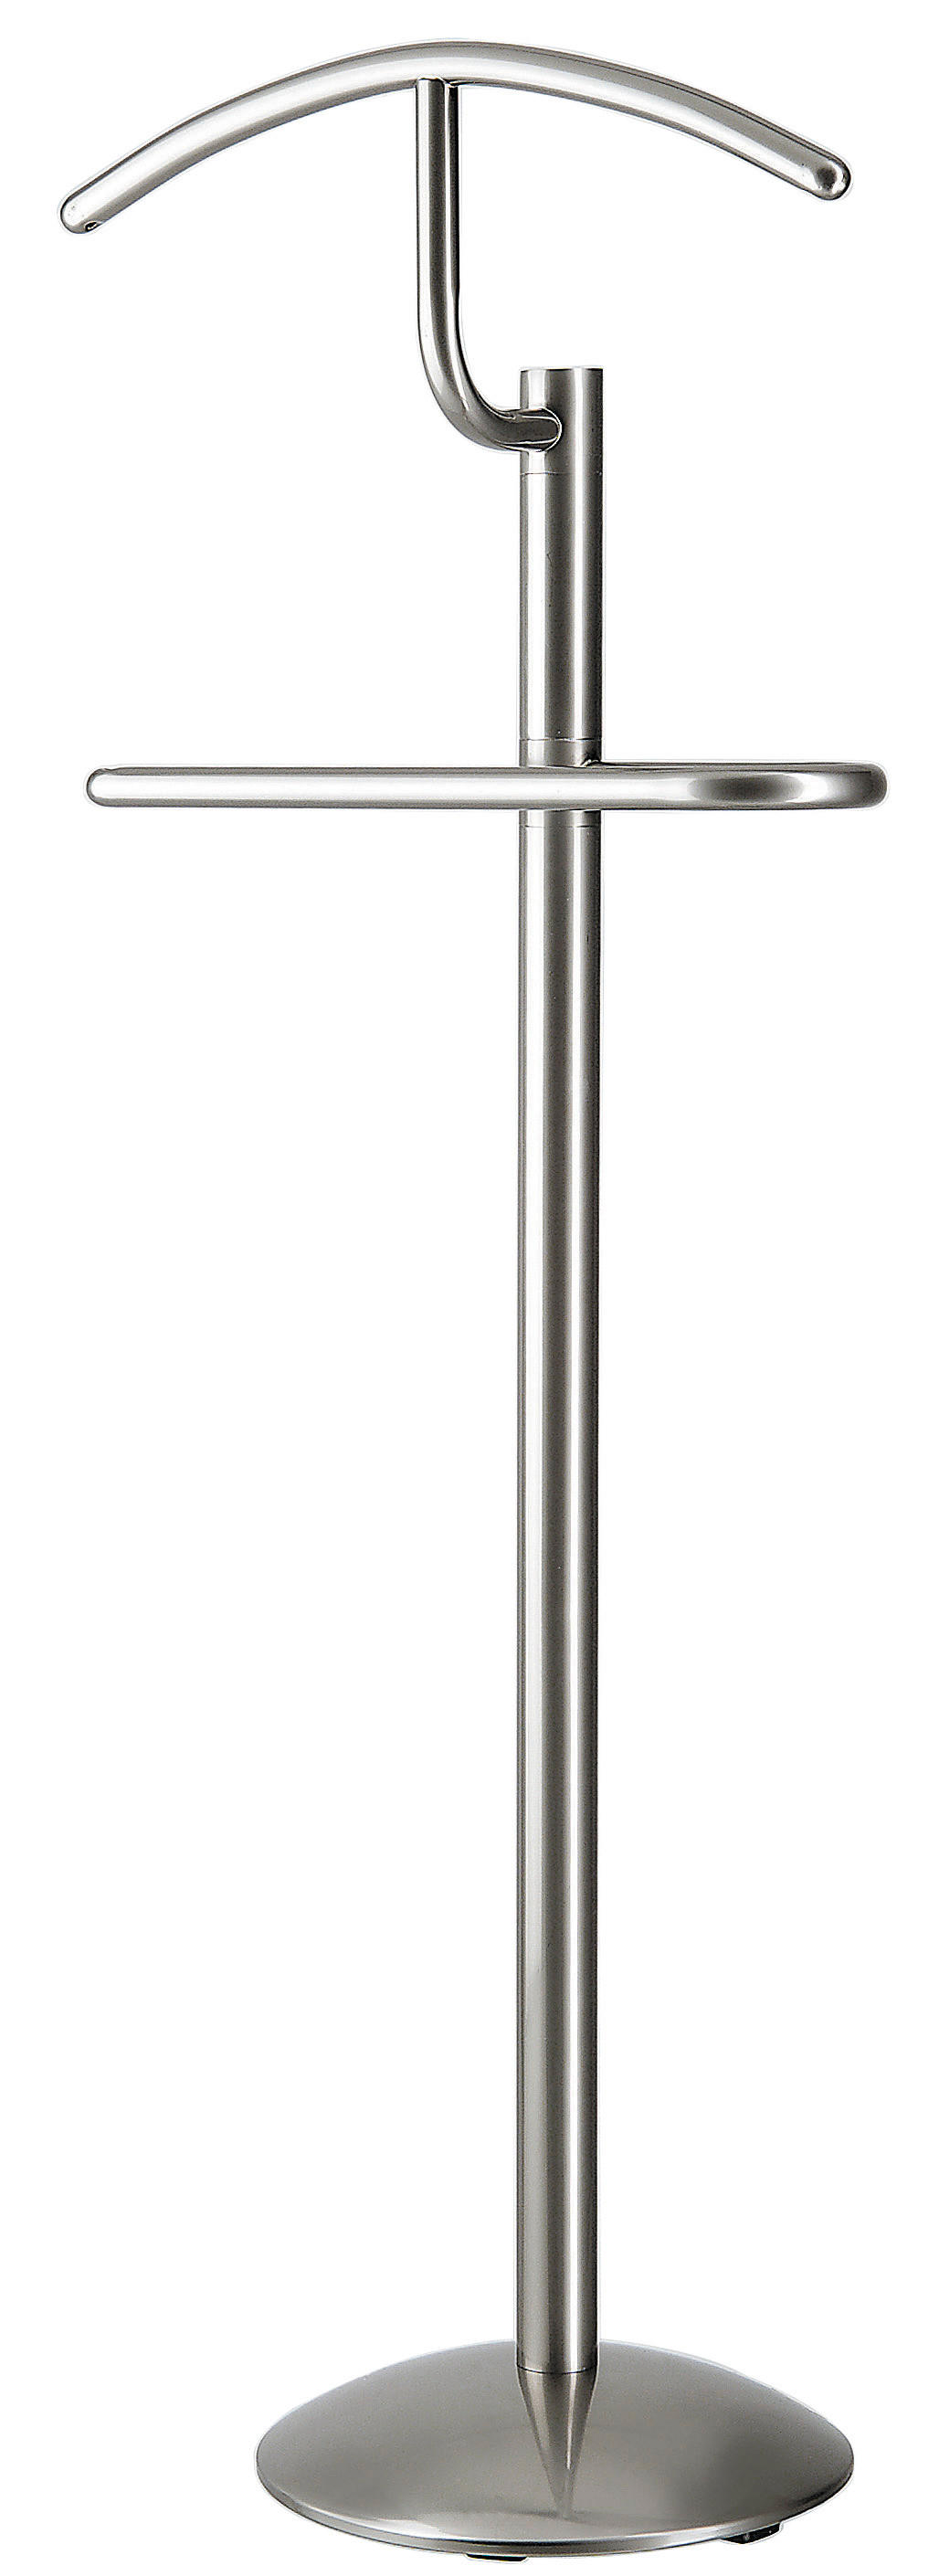 HERRENDIENER Edelstahlfarben  - Edelstahlfarben, Design, Metall (40/120/28cm) - Boxxx